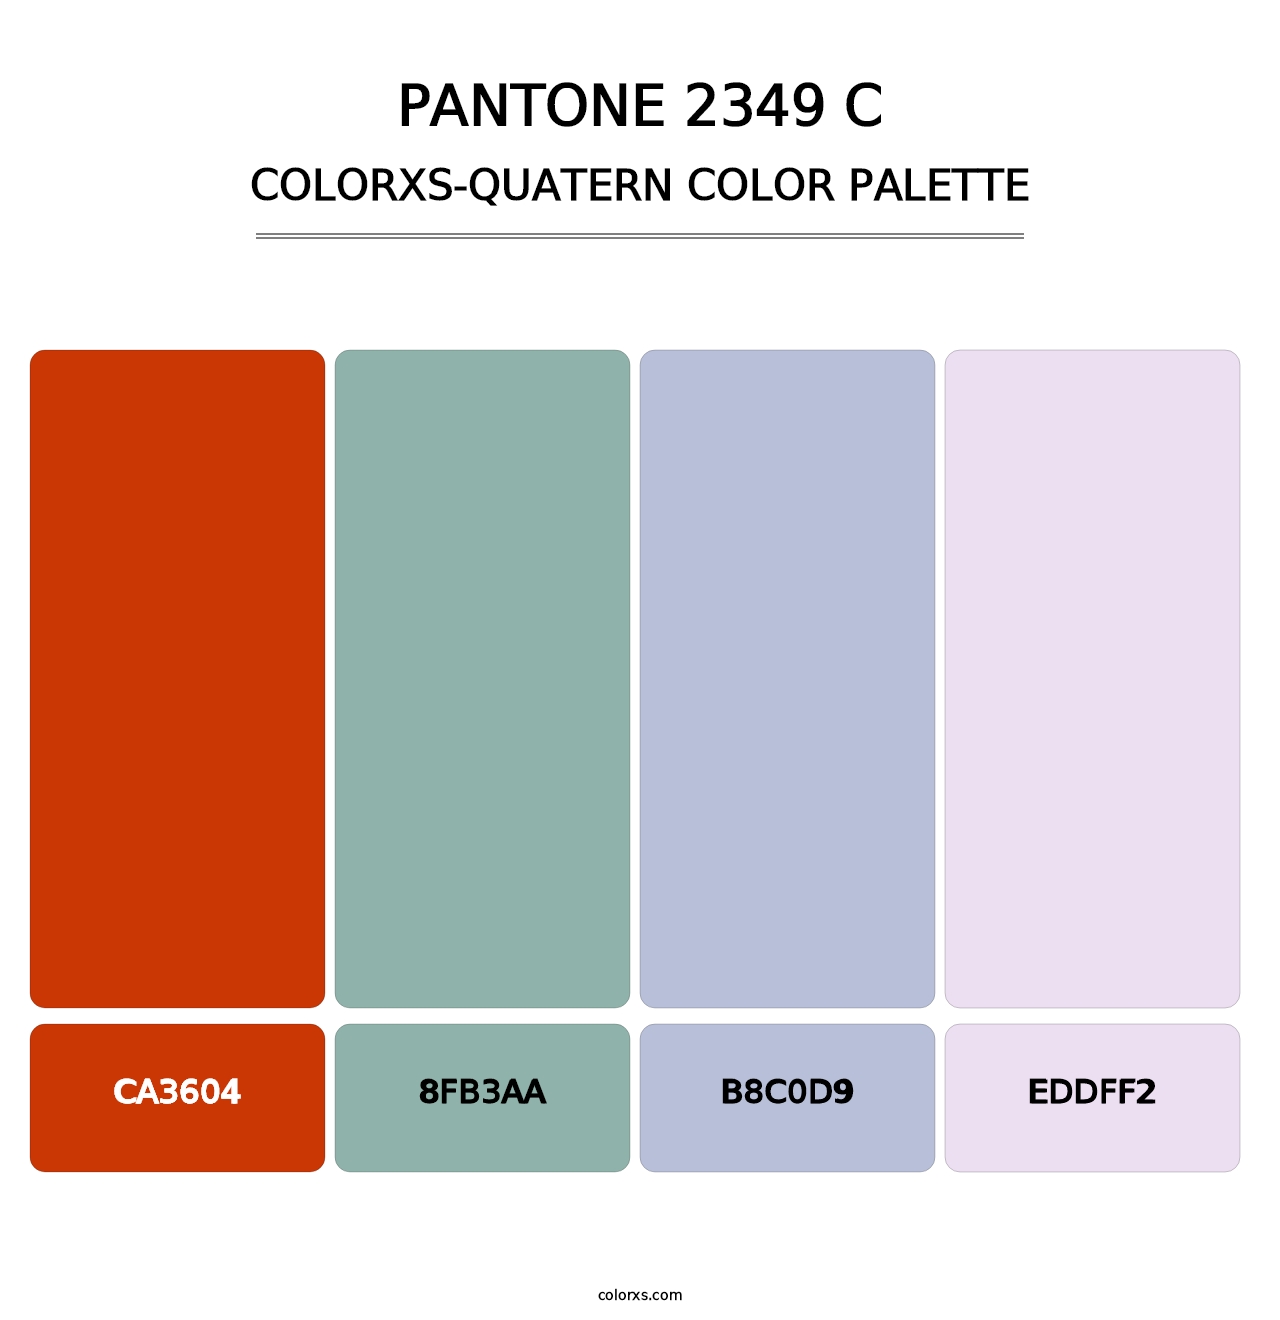 PANTONE 2349 C - Colorxs Quatern Palette